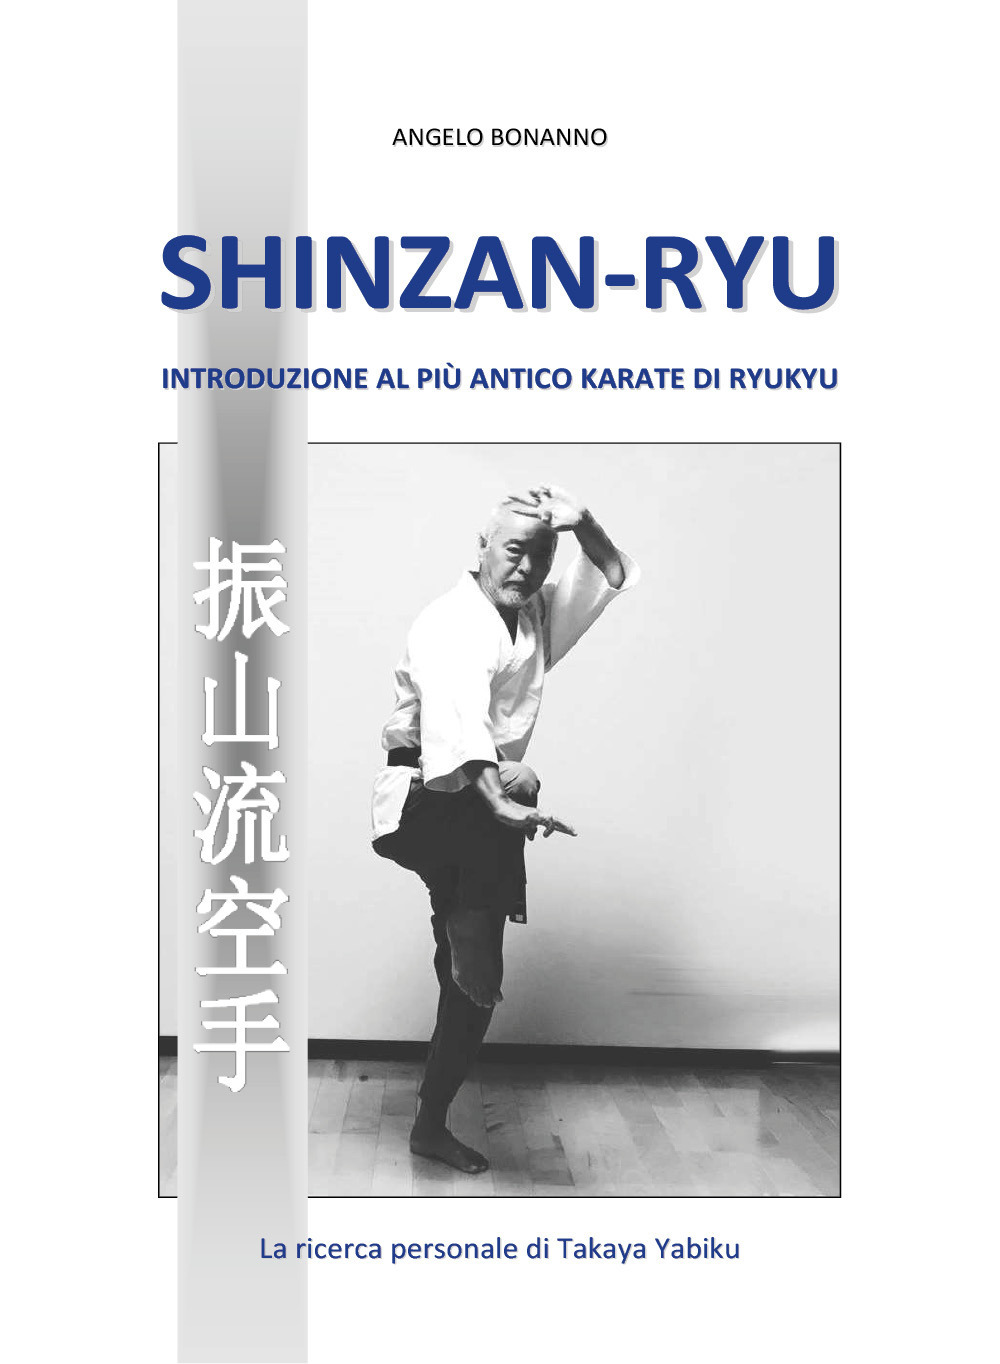 Libri Angelo Bonanno - Shinzan-Ryu. Introduzione Al Piu Antico Karate Di Ryukyu NUOVO SIGILLATO, EDIZIONE DEL 28/05/2020 SUBITO DISPONIBILE